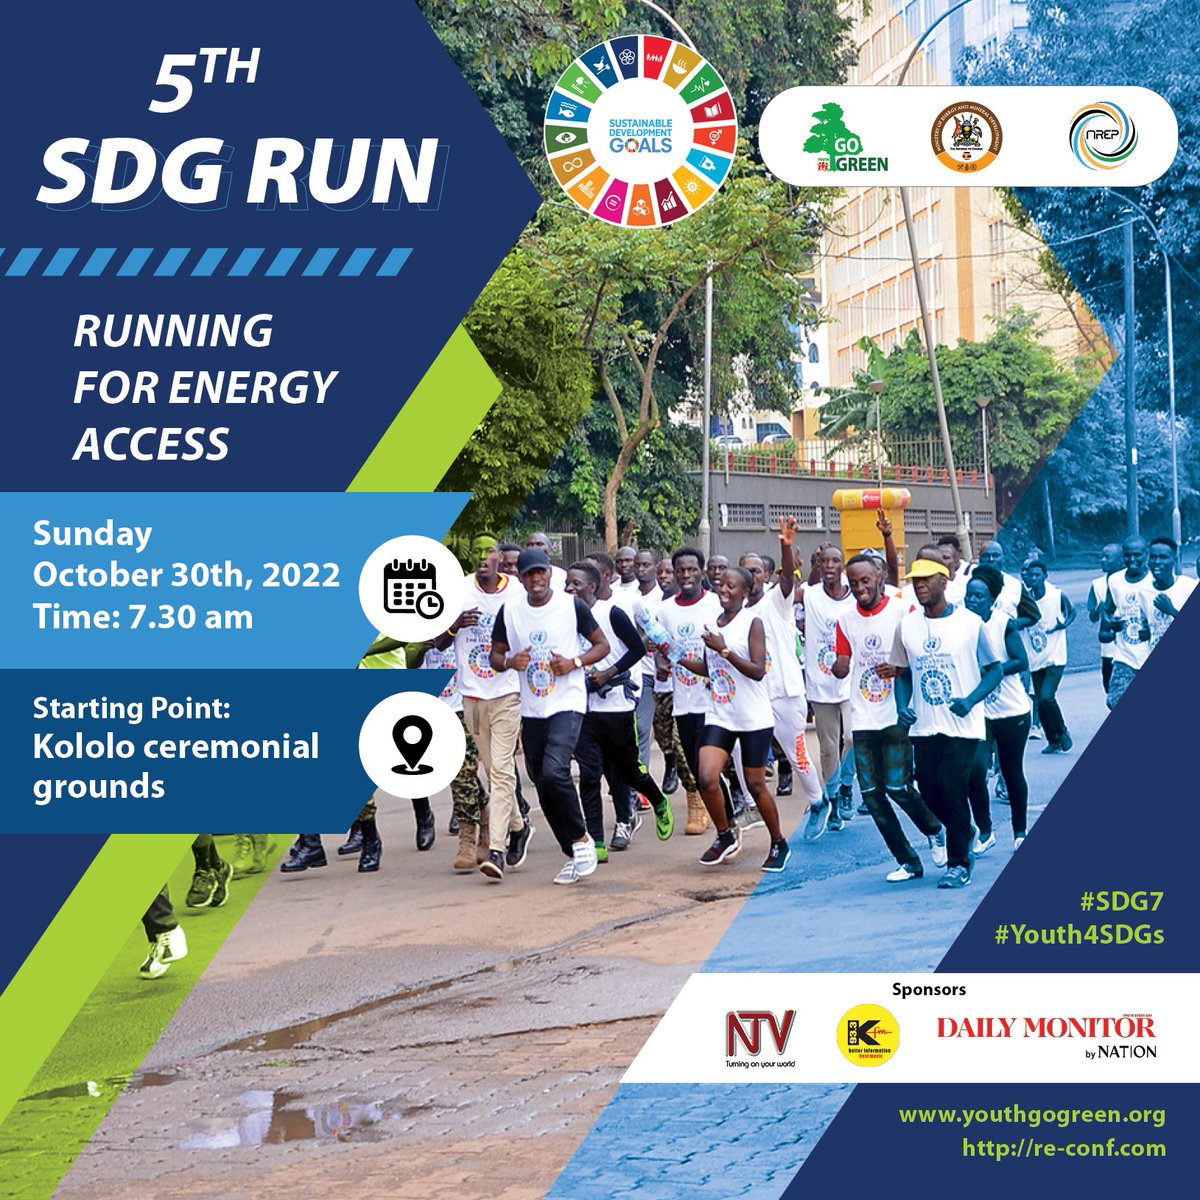 Don't miss! #5thSDGRun 30.10.22 at KololoGrounds. #Run4EnergyAccess #SDG7 @RMalango2021 @UNDPUganda @FAOUganda @queridoAntonioL @SusanNamondo @gloria_namande @MEMD_Uganda @RebeccaKadagaUG @Nrepuganda @brianisabirye @NicMukisa @OxfaminUganda @ShantyFrancis @GggiUganda @UNinUganda